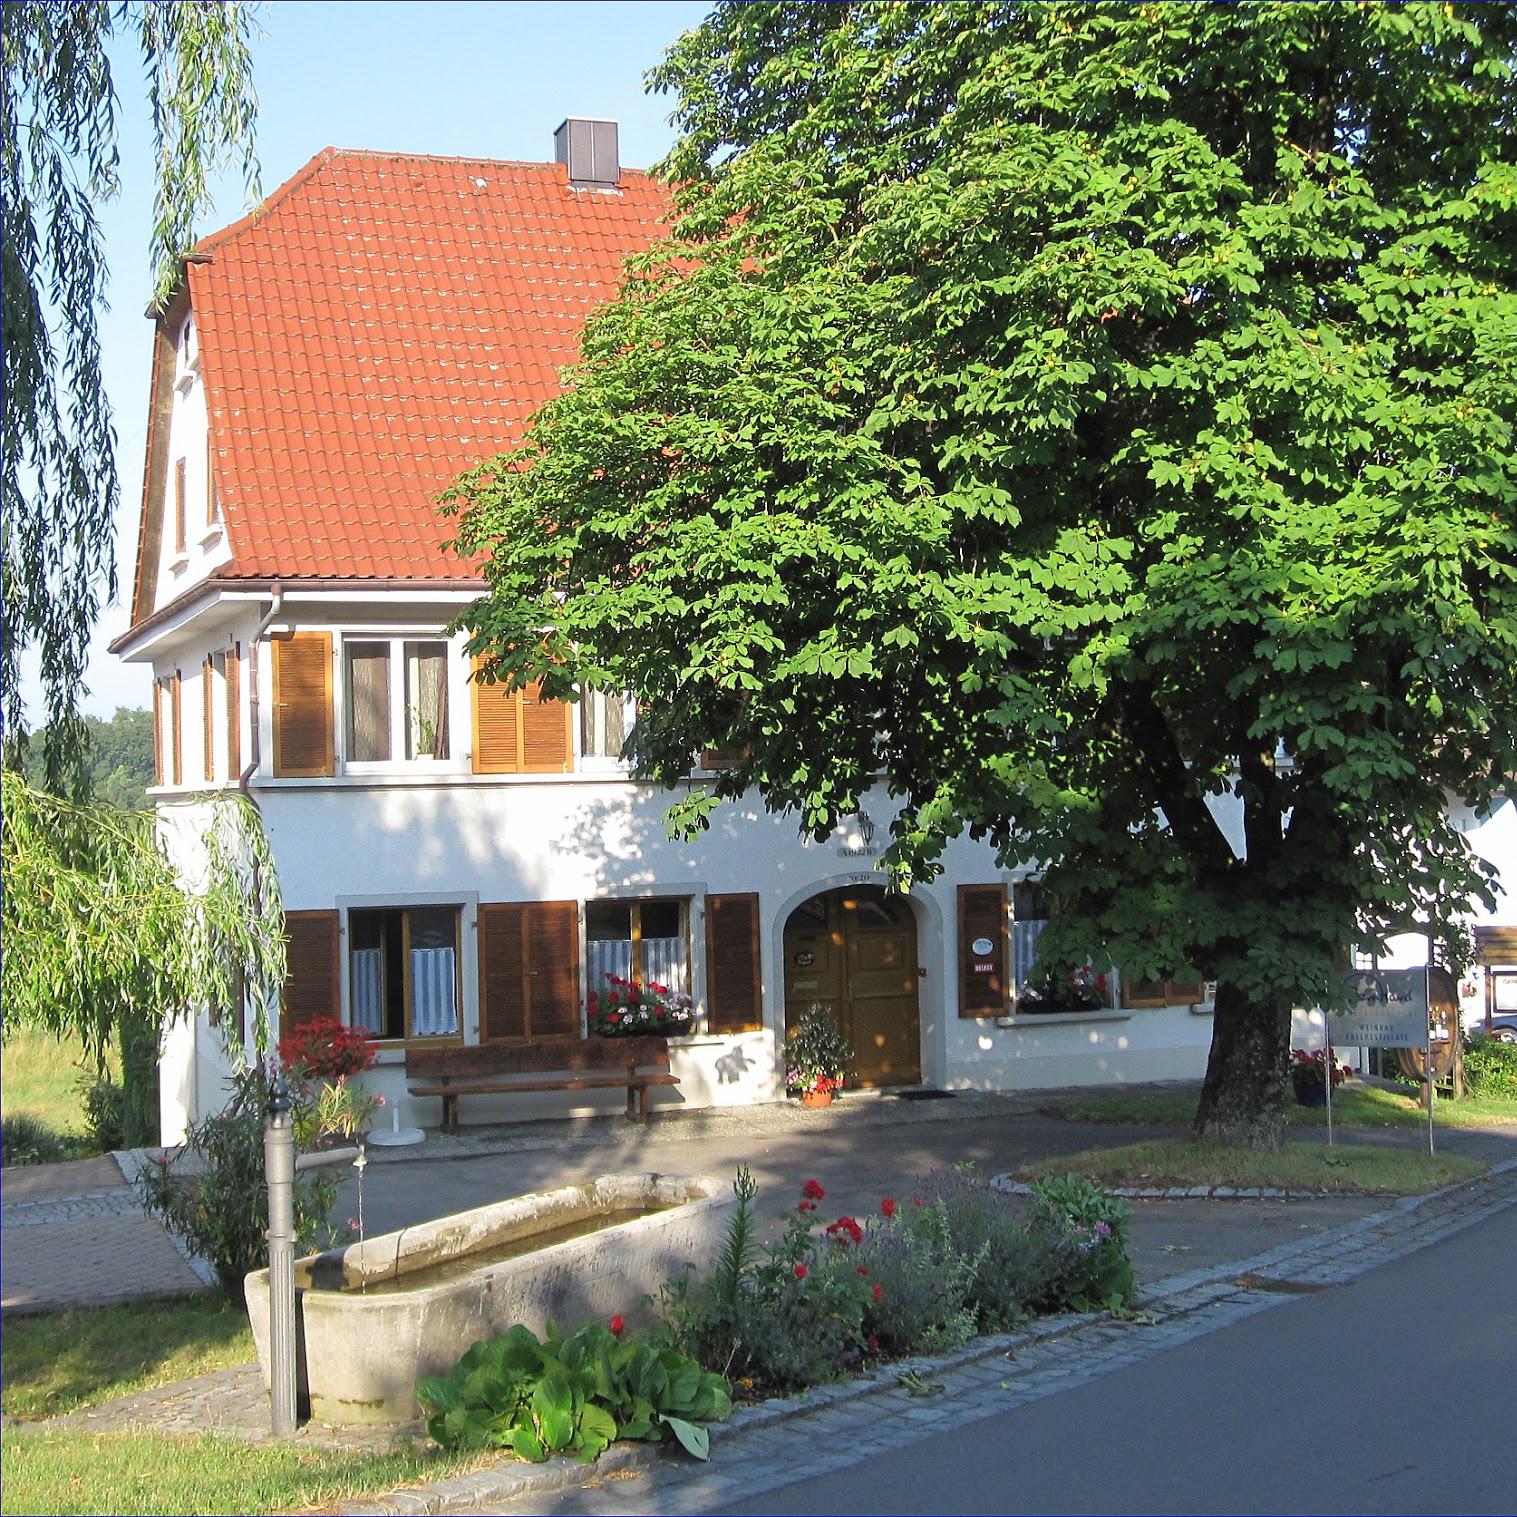 Restaurant "Weingut Bernhard" in Daisendorf